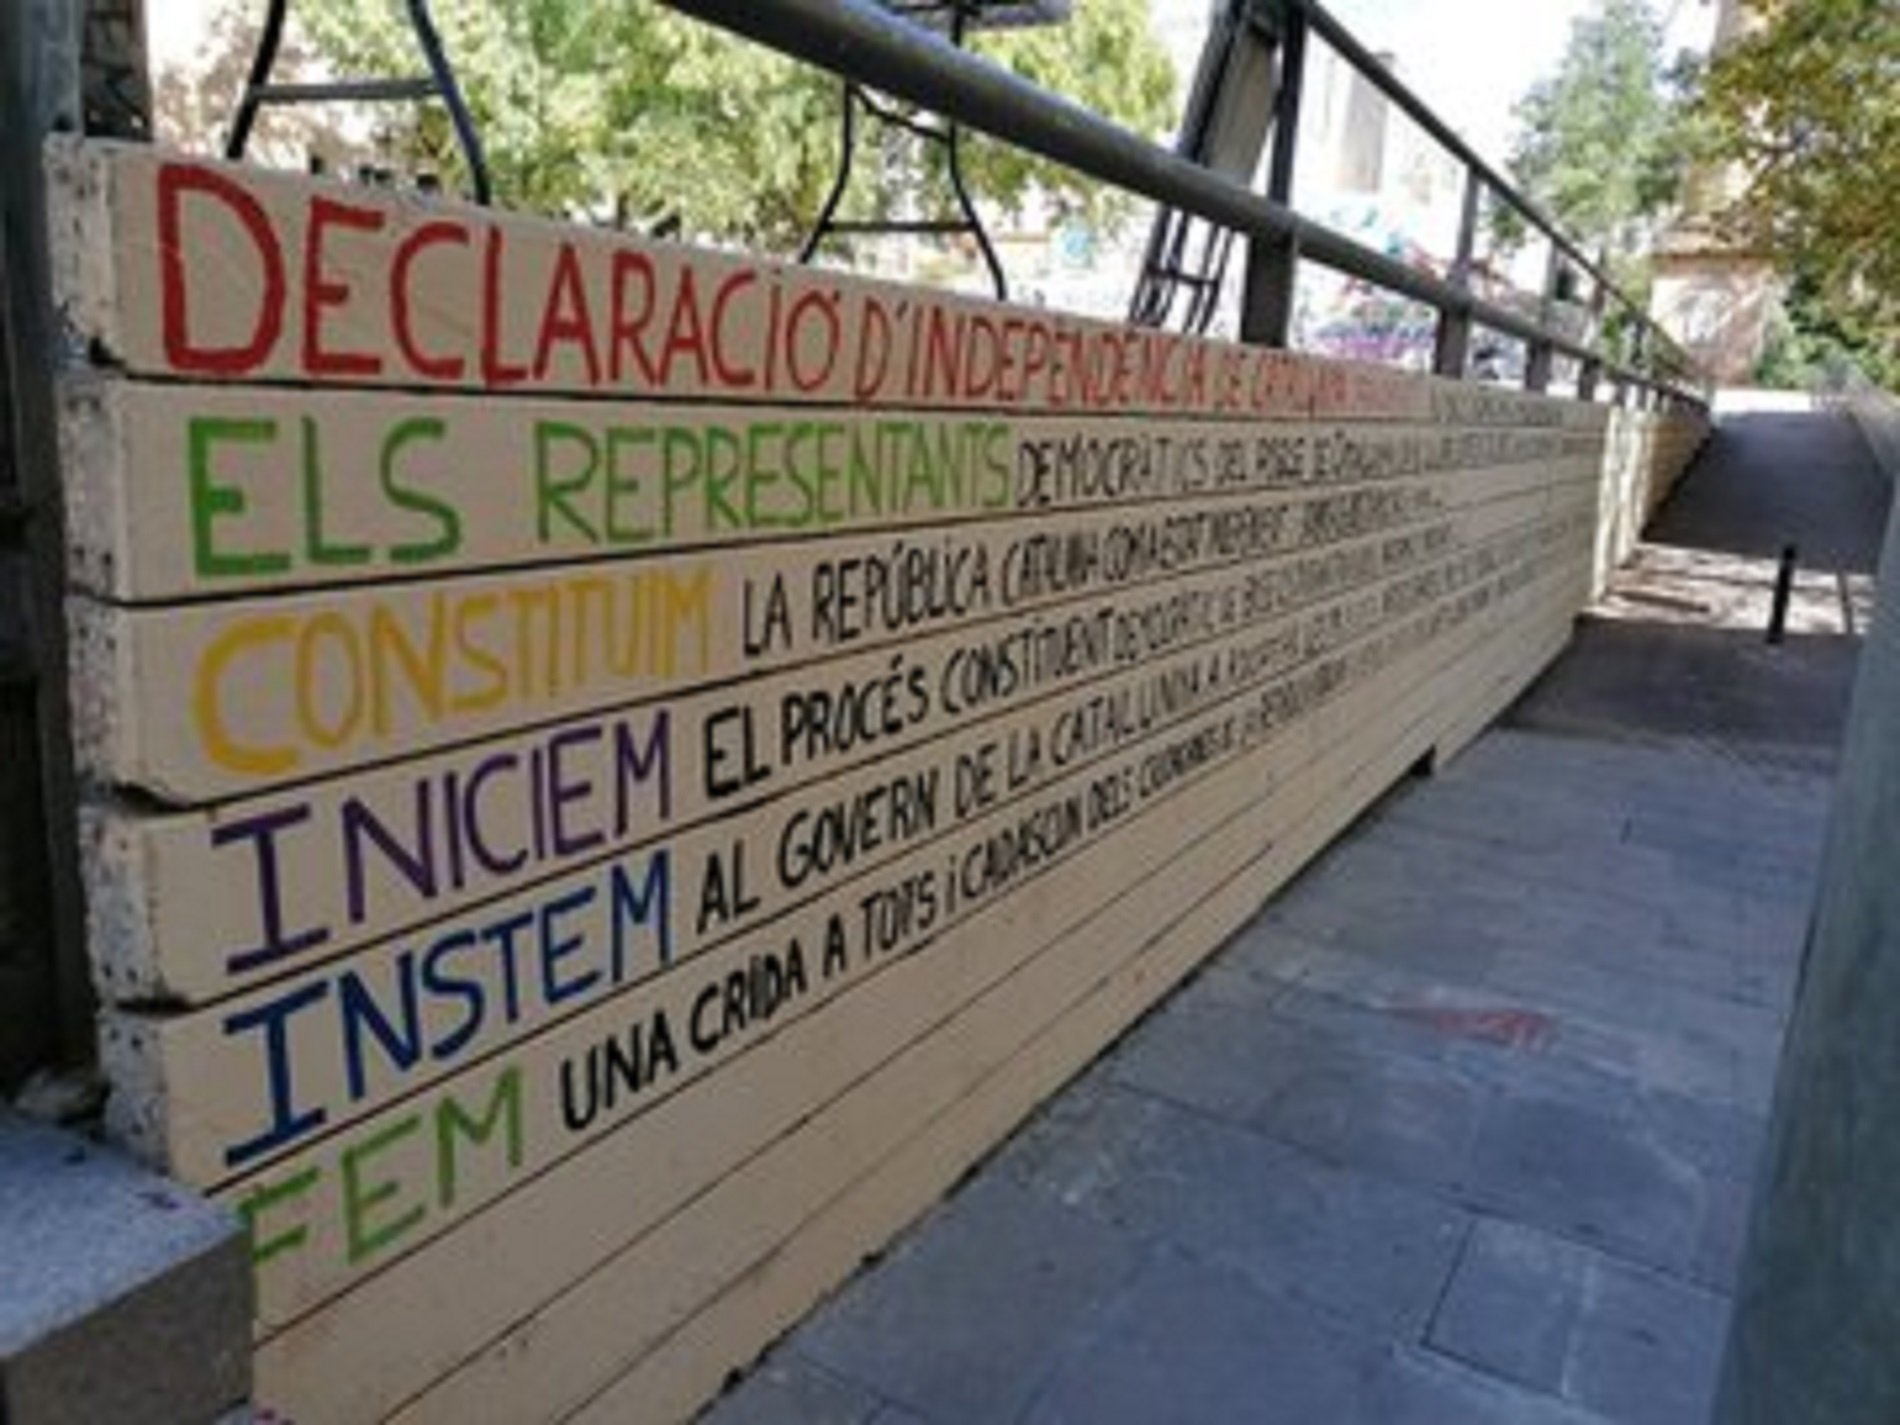 Multa de 2.100 euros por escribir la declaración de independencia en una plaza